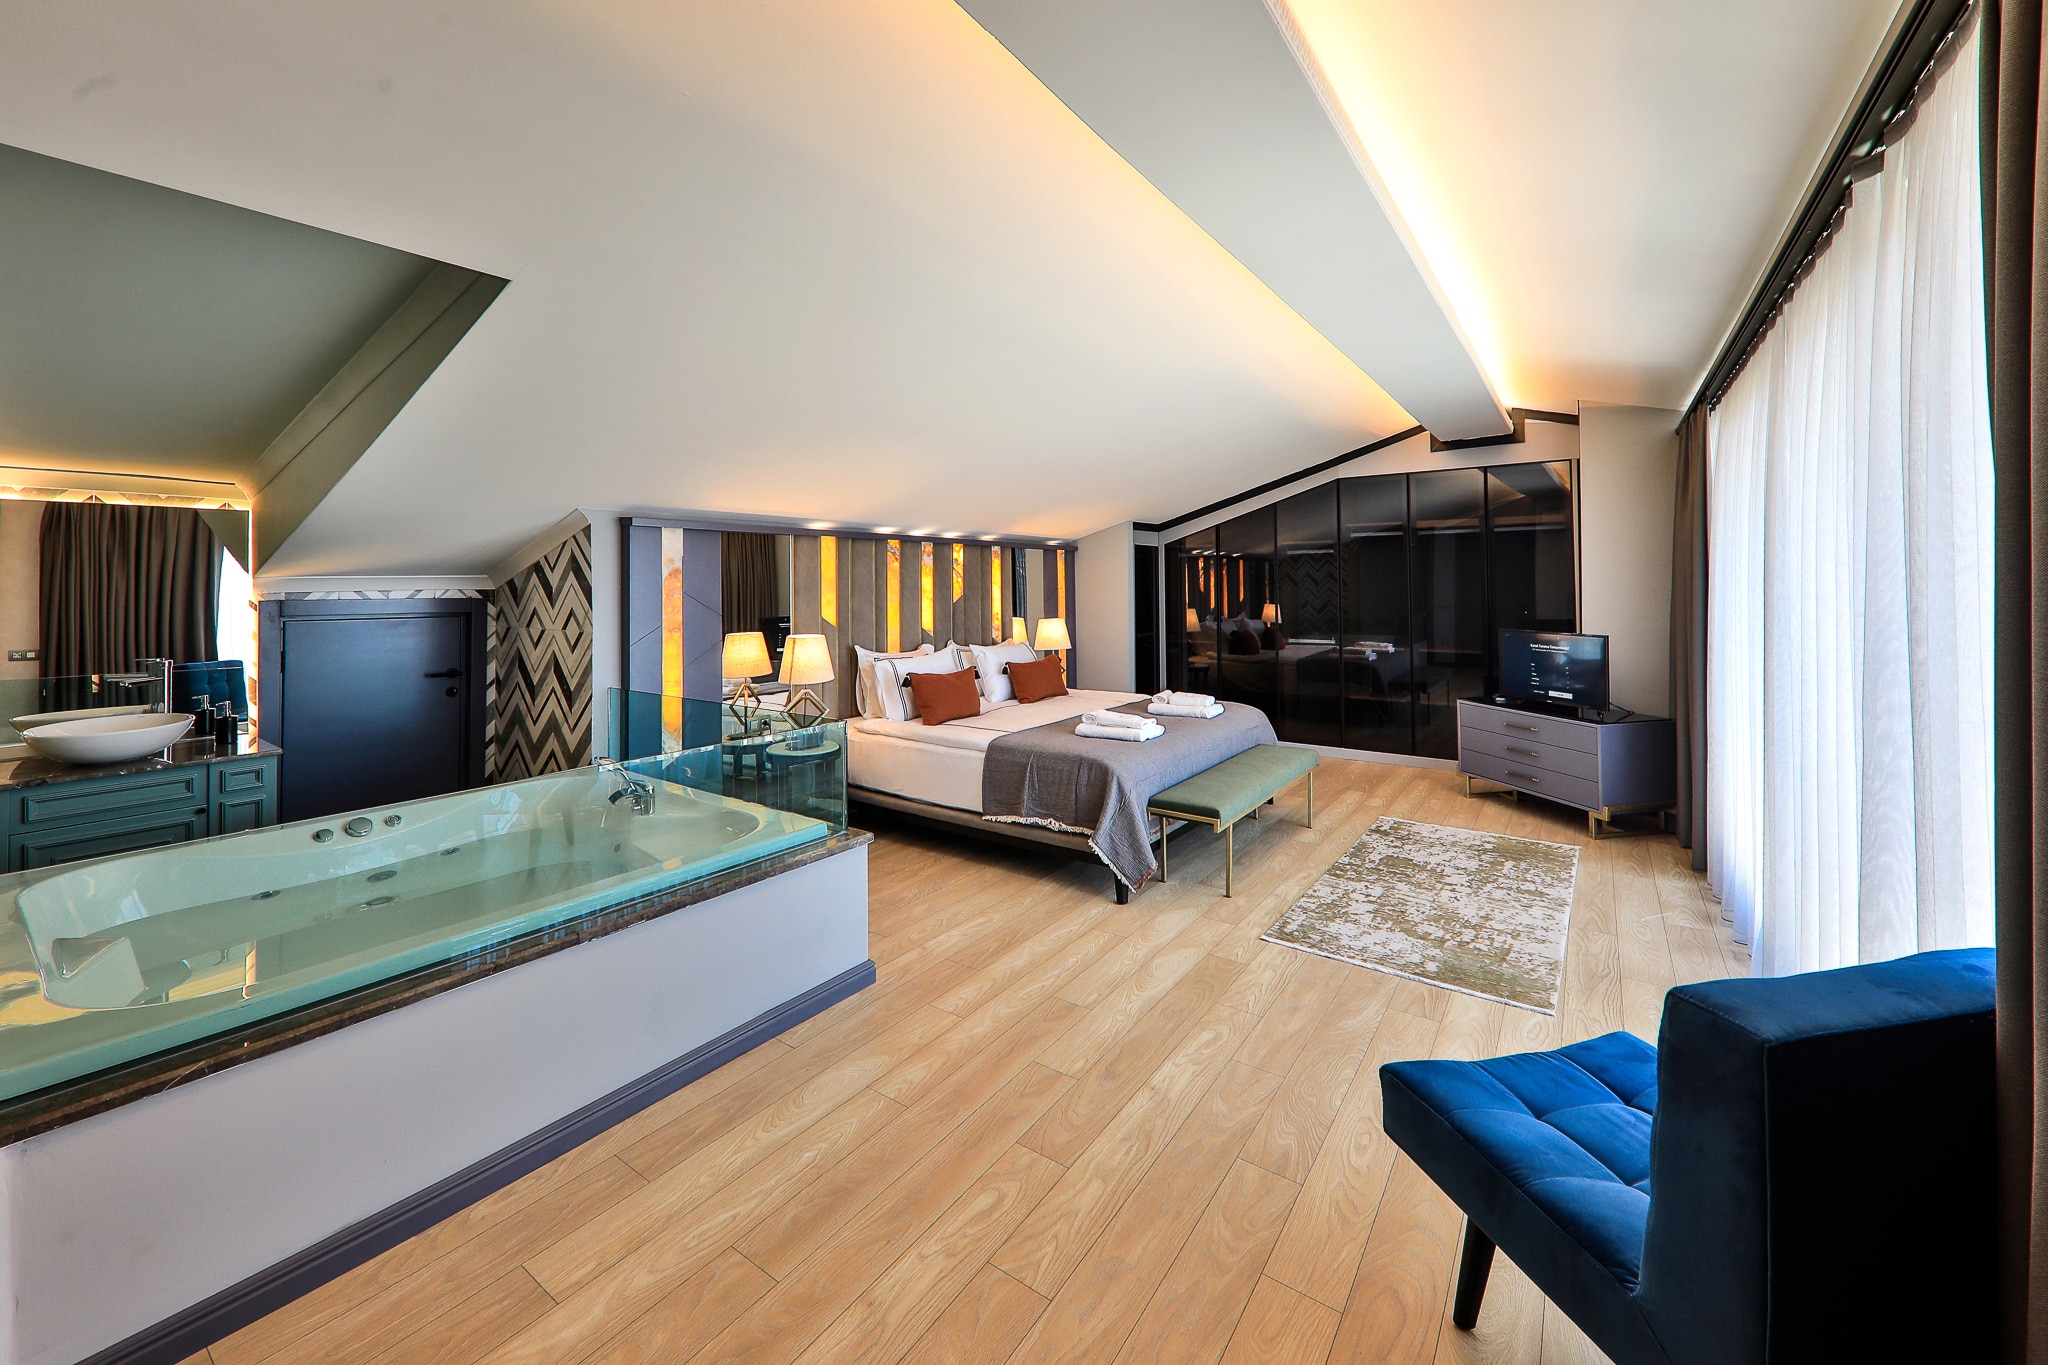 Villa Sandie top floor bedroom with open bath